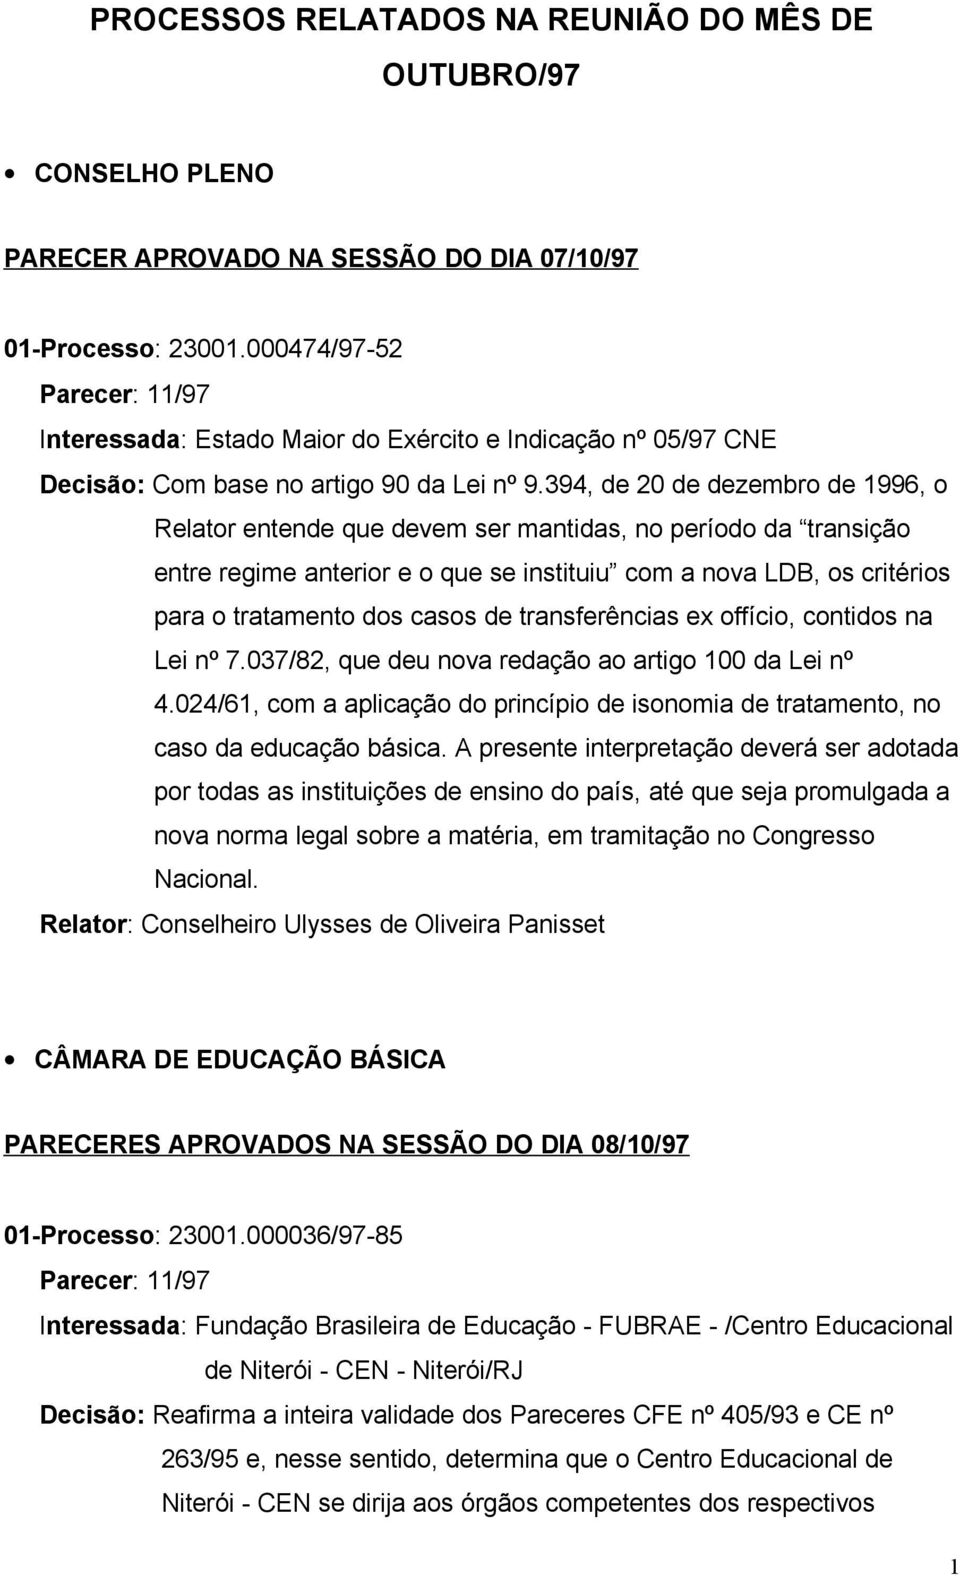 394, de 20 de dezembro de 1996, o Relator entende que devem ser mantidas, no período da transição entre regime anterior e o que se instituiu com a nova LDB, os critérios para o tratamento dos casos